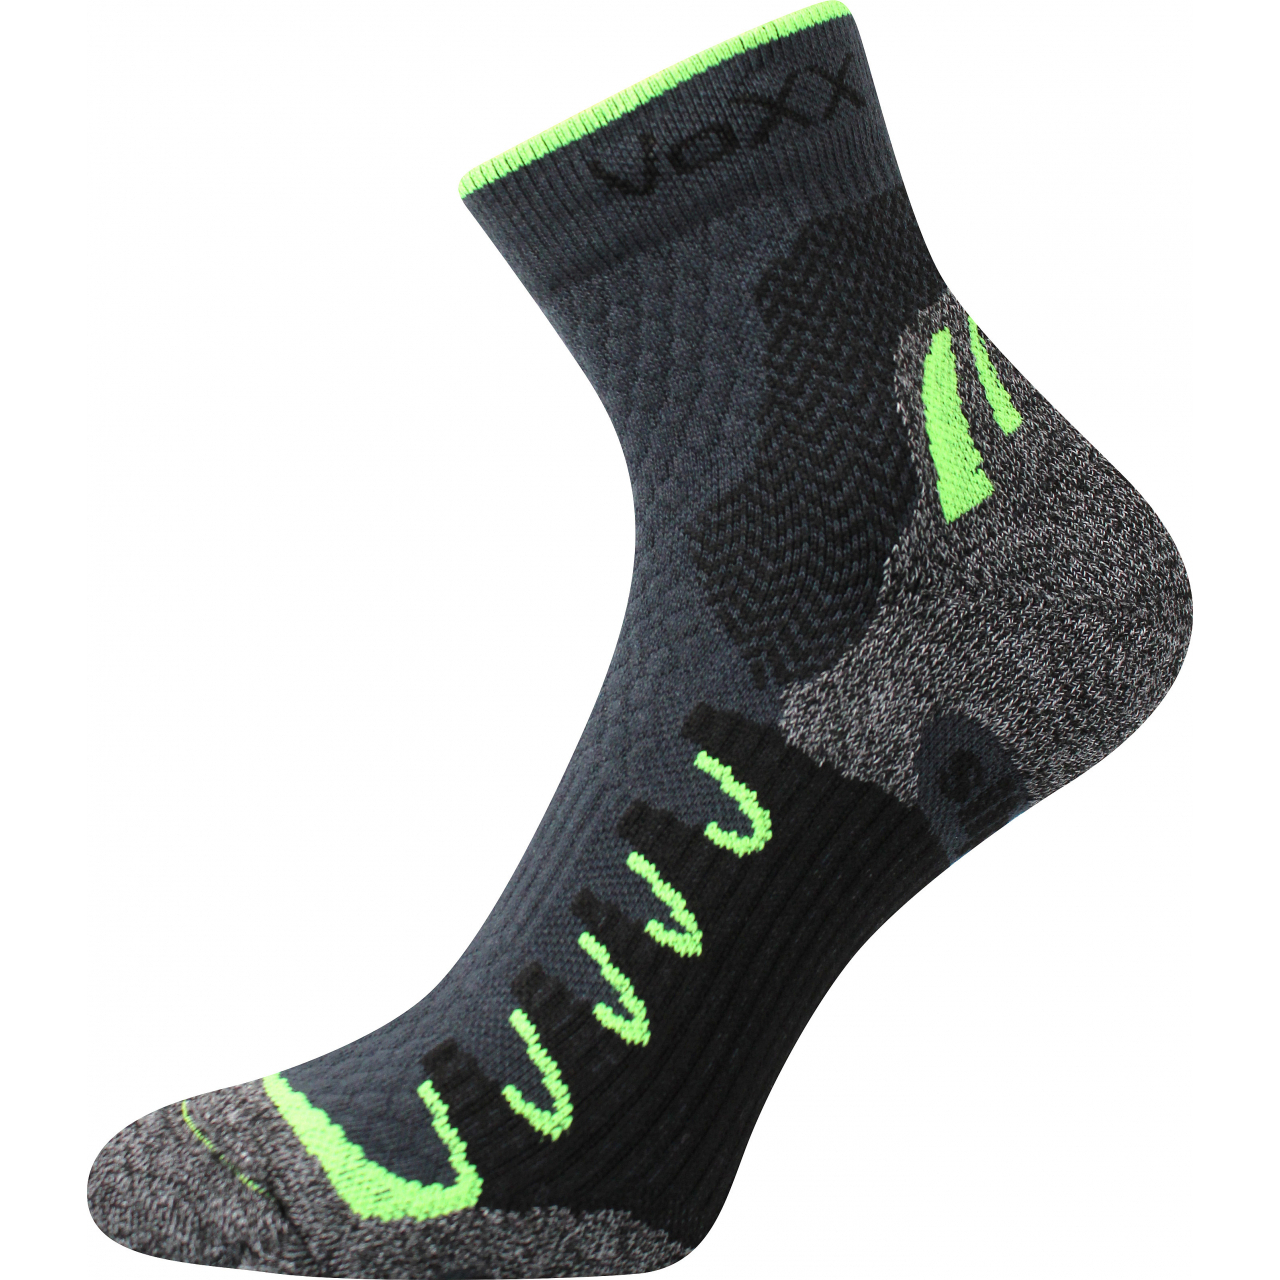 Ponožky snížené sportovní Voxx Synergy silproX - šedé-zelené, 35-38